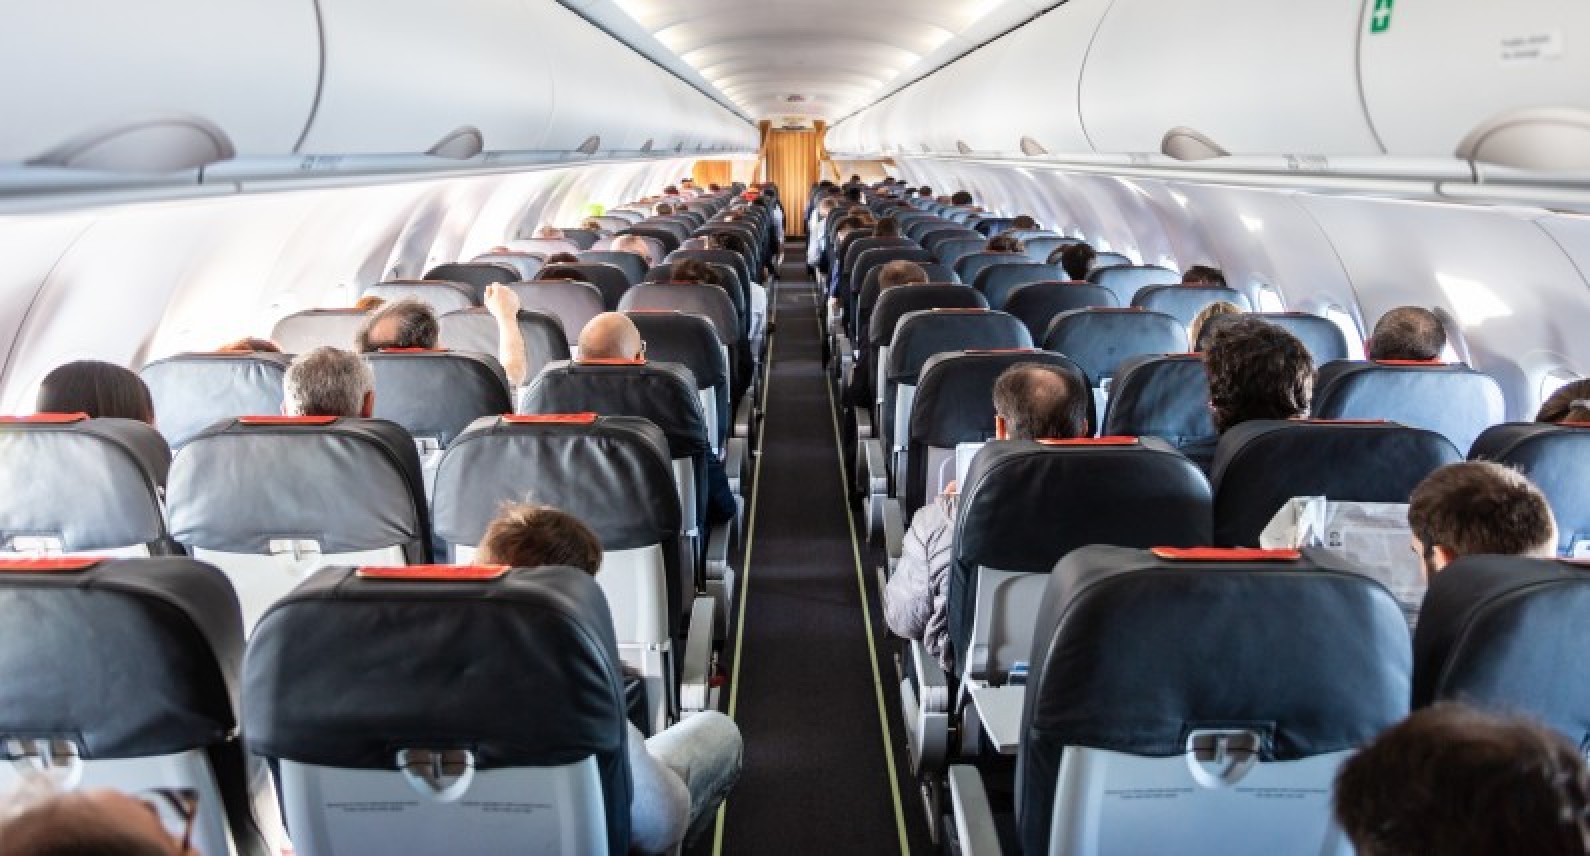 Podróże lotnicze to nowa droga zarażenia koronawirusem: Instytut Zdrowia Publicznego chce śledzić infekcje w samolotach